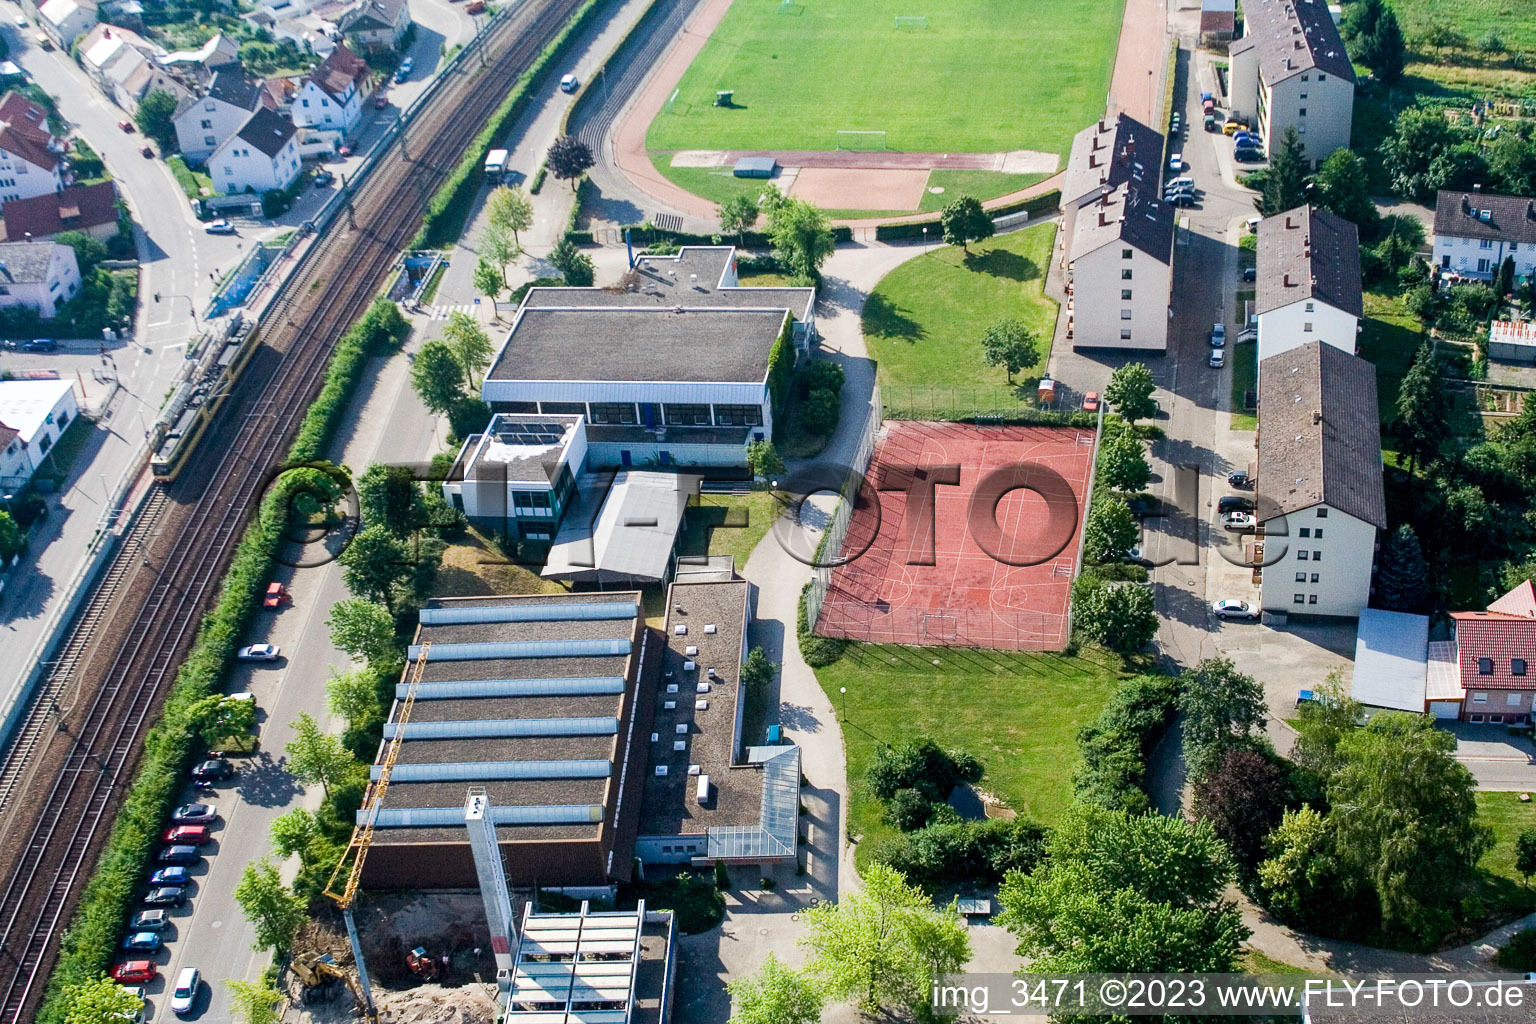 Vue aérienne de Salles de sport à le quartier Berghausen in Pfinztal dans le département Bade-Wurtemberg, Allemagne